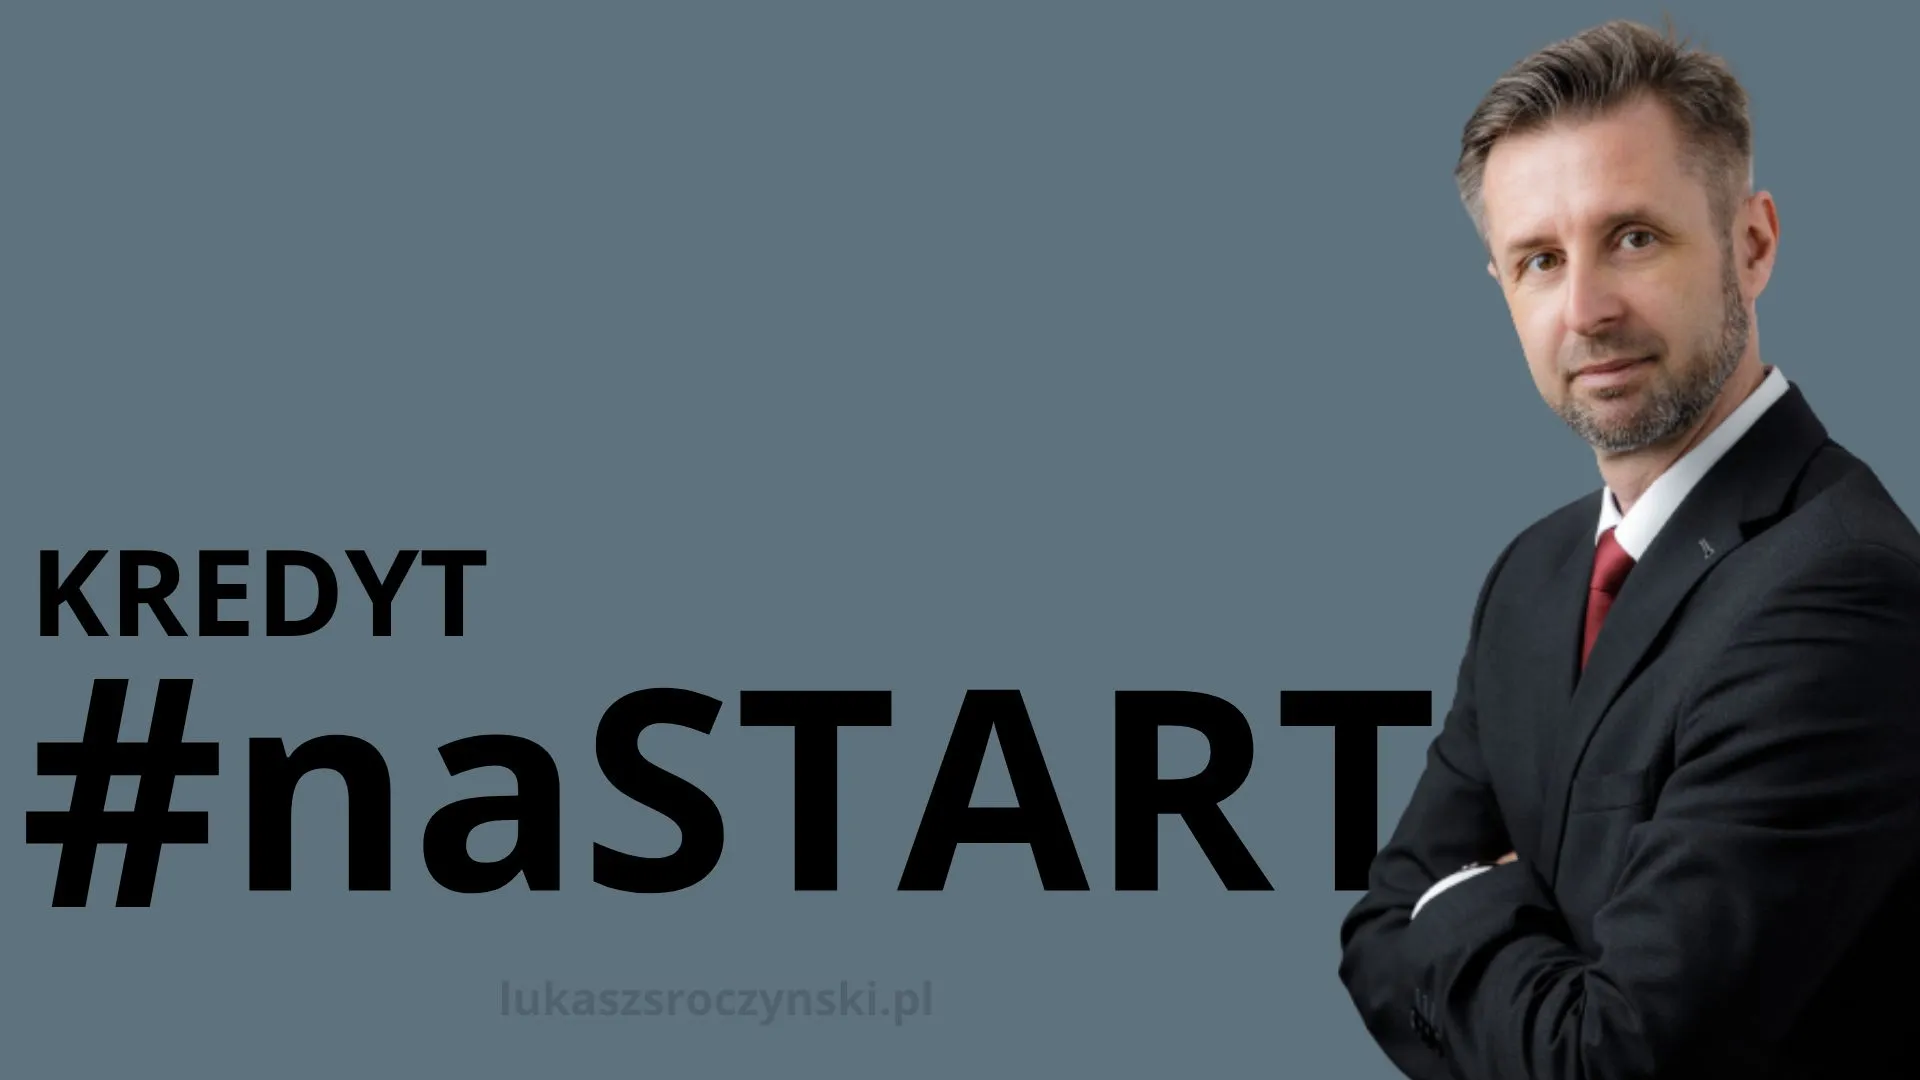 Kredyt #naSTART - pośrednik kredytowy Łukasz Sroczyński